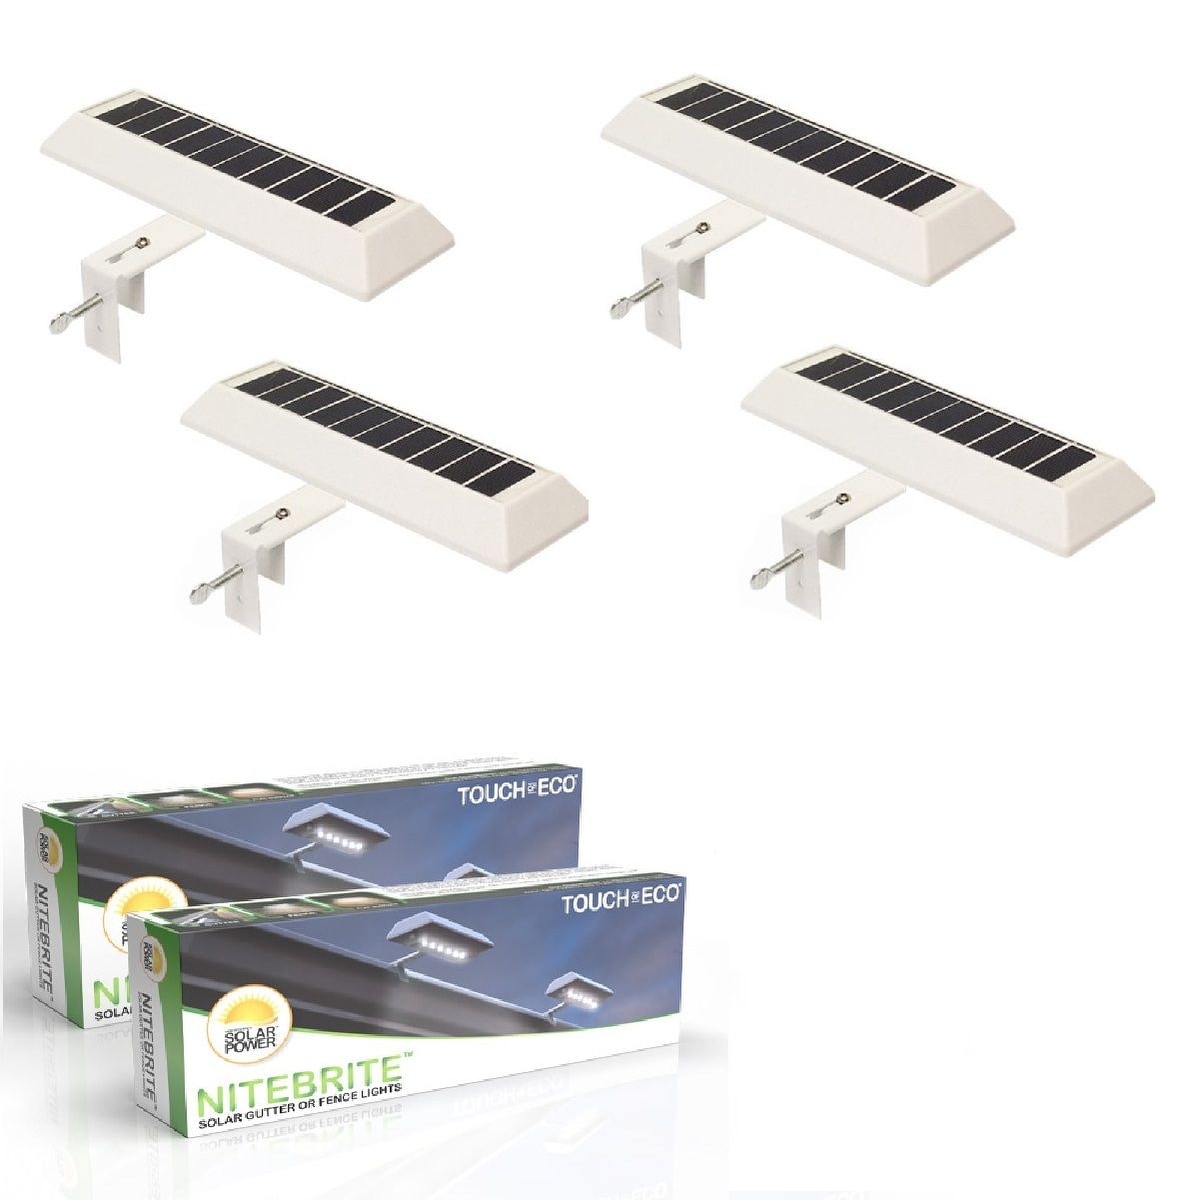 Nitebrite Solar Motion Detector Outdoor LED Lights 2 or 4 Pack